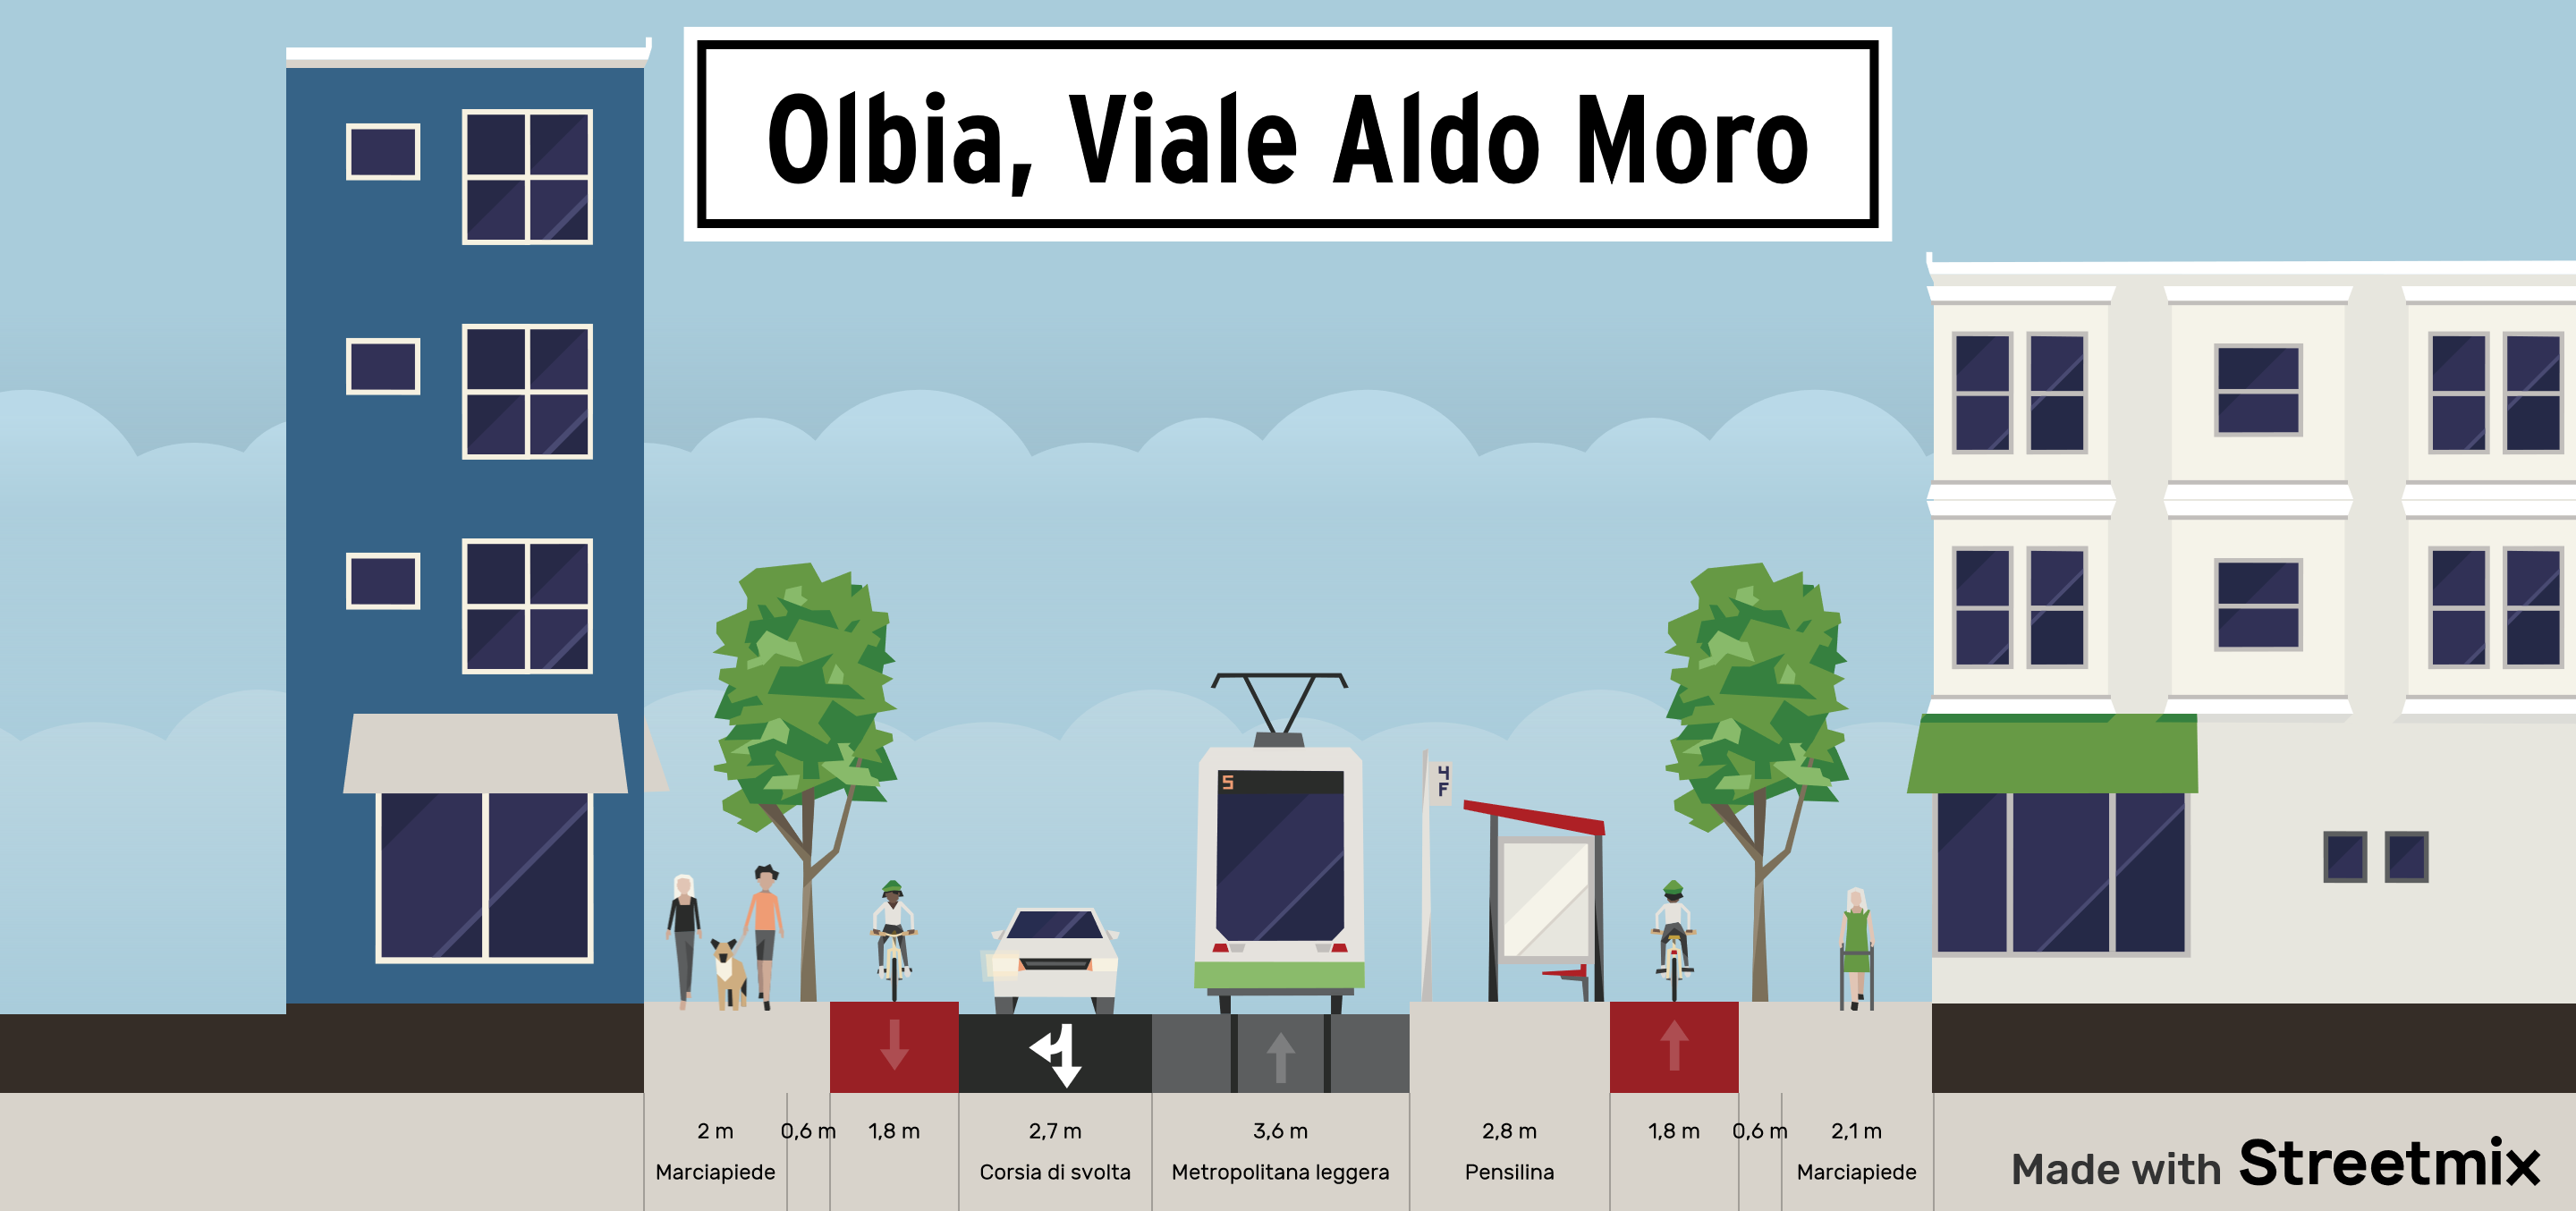 Covid-19 Olbia, Viale Aldo Moro: ecco la strada del futuro